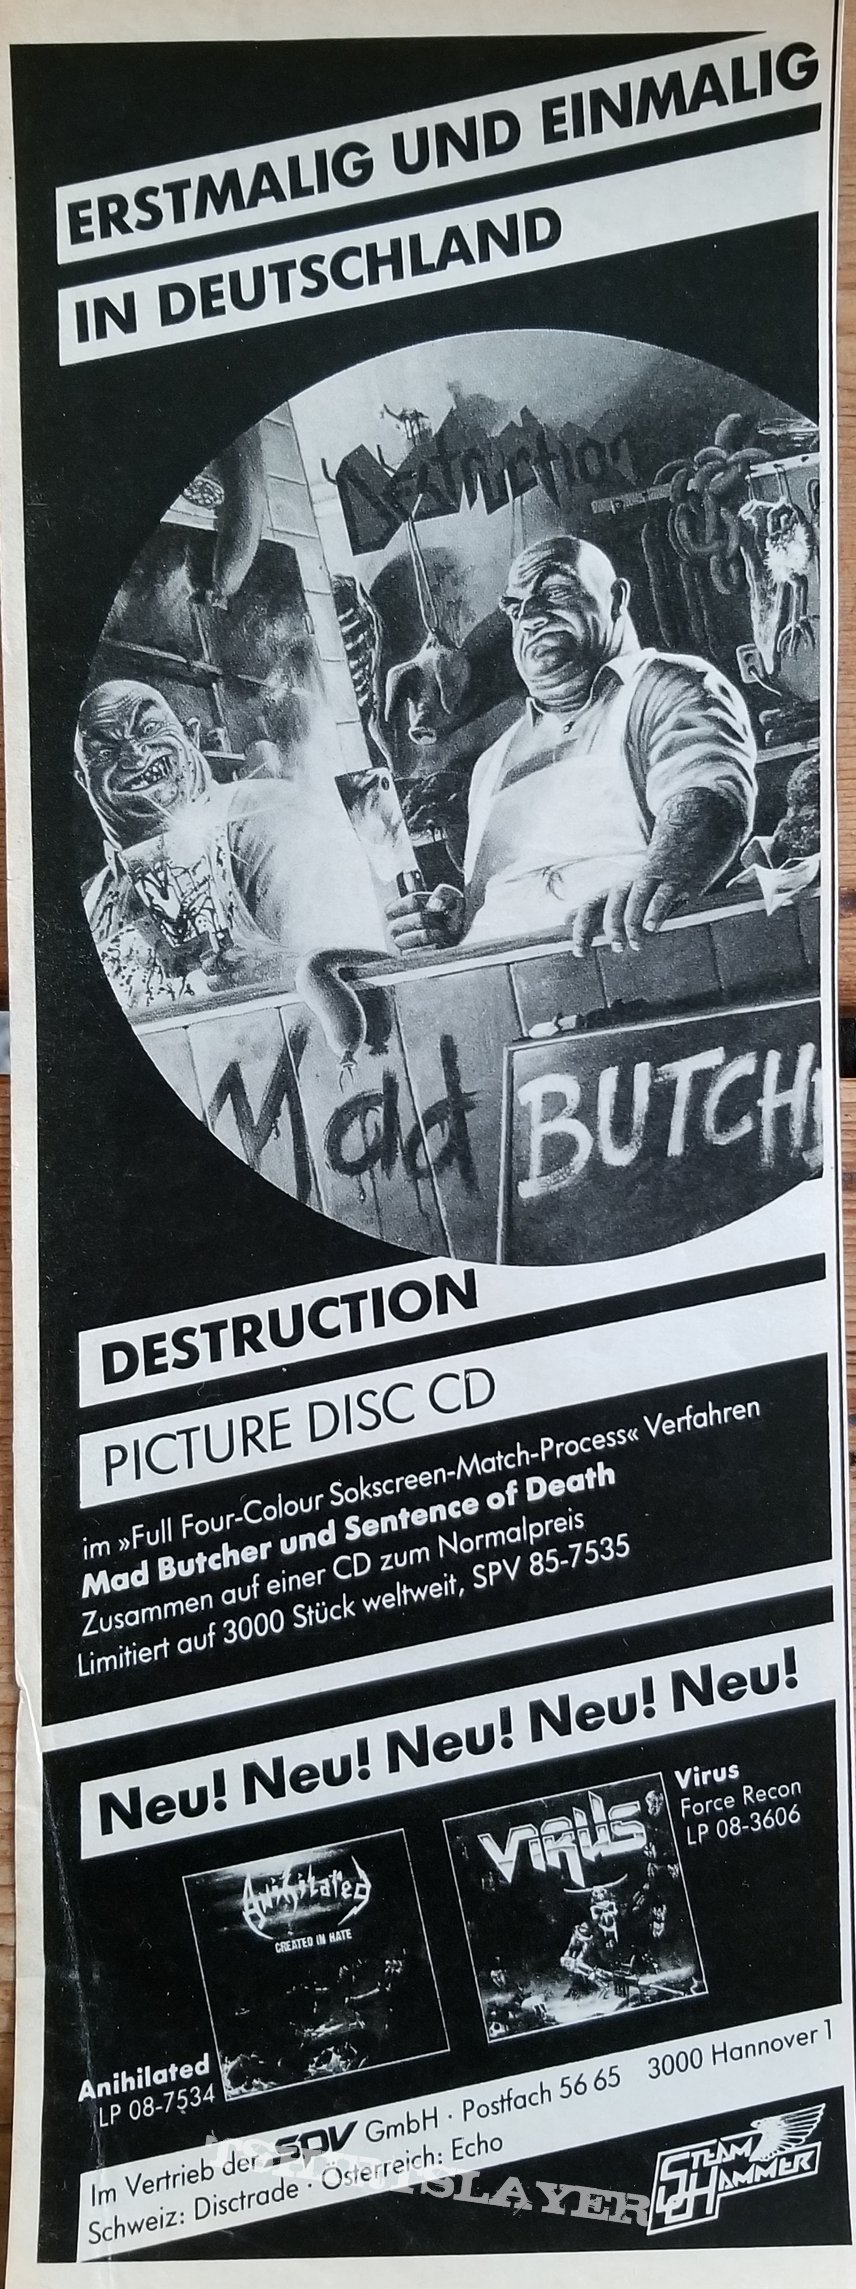 Destruction &#039; Mad Butcher &#039; Original Vinyl LP + Promotional Posters + Ads